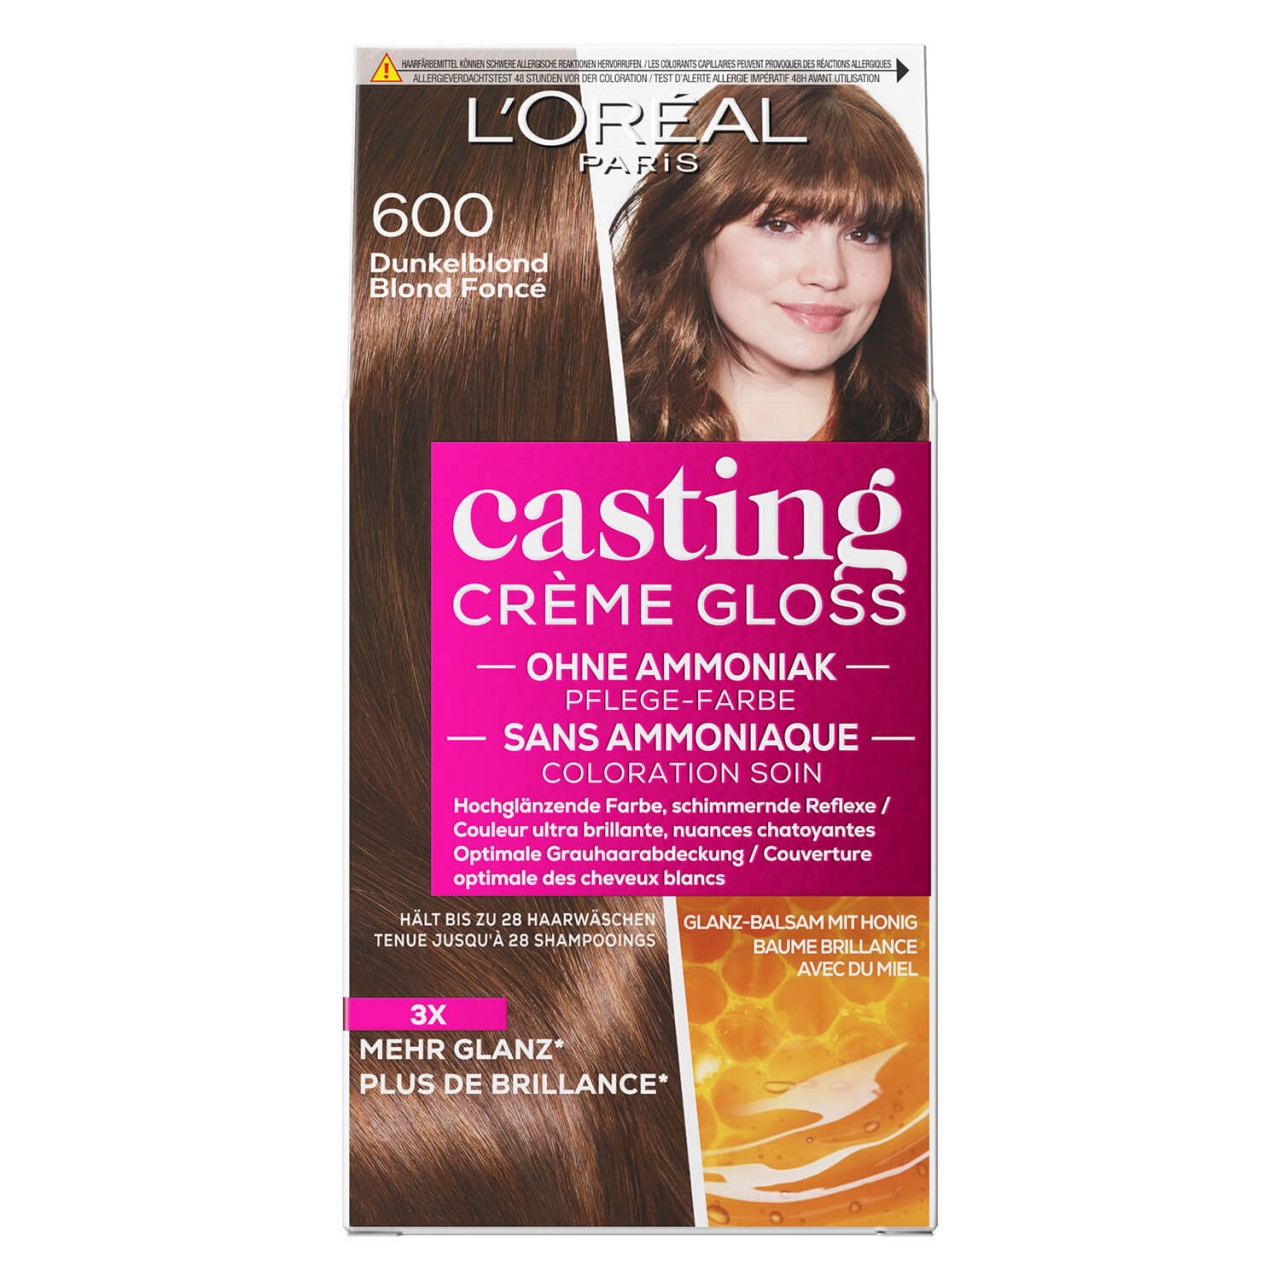 LOréal Casting - Crème Gloss 600 Dunkelblond von L'Oréal Paris